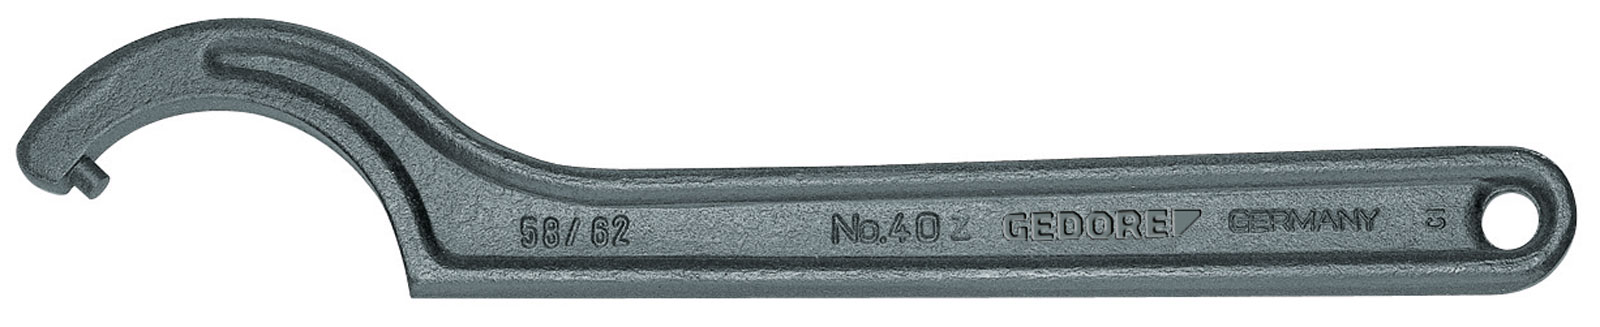 Bild von 40 Z 25-28 Hakenschlüssel, DIN 1810 Form B, 25-28 mm